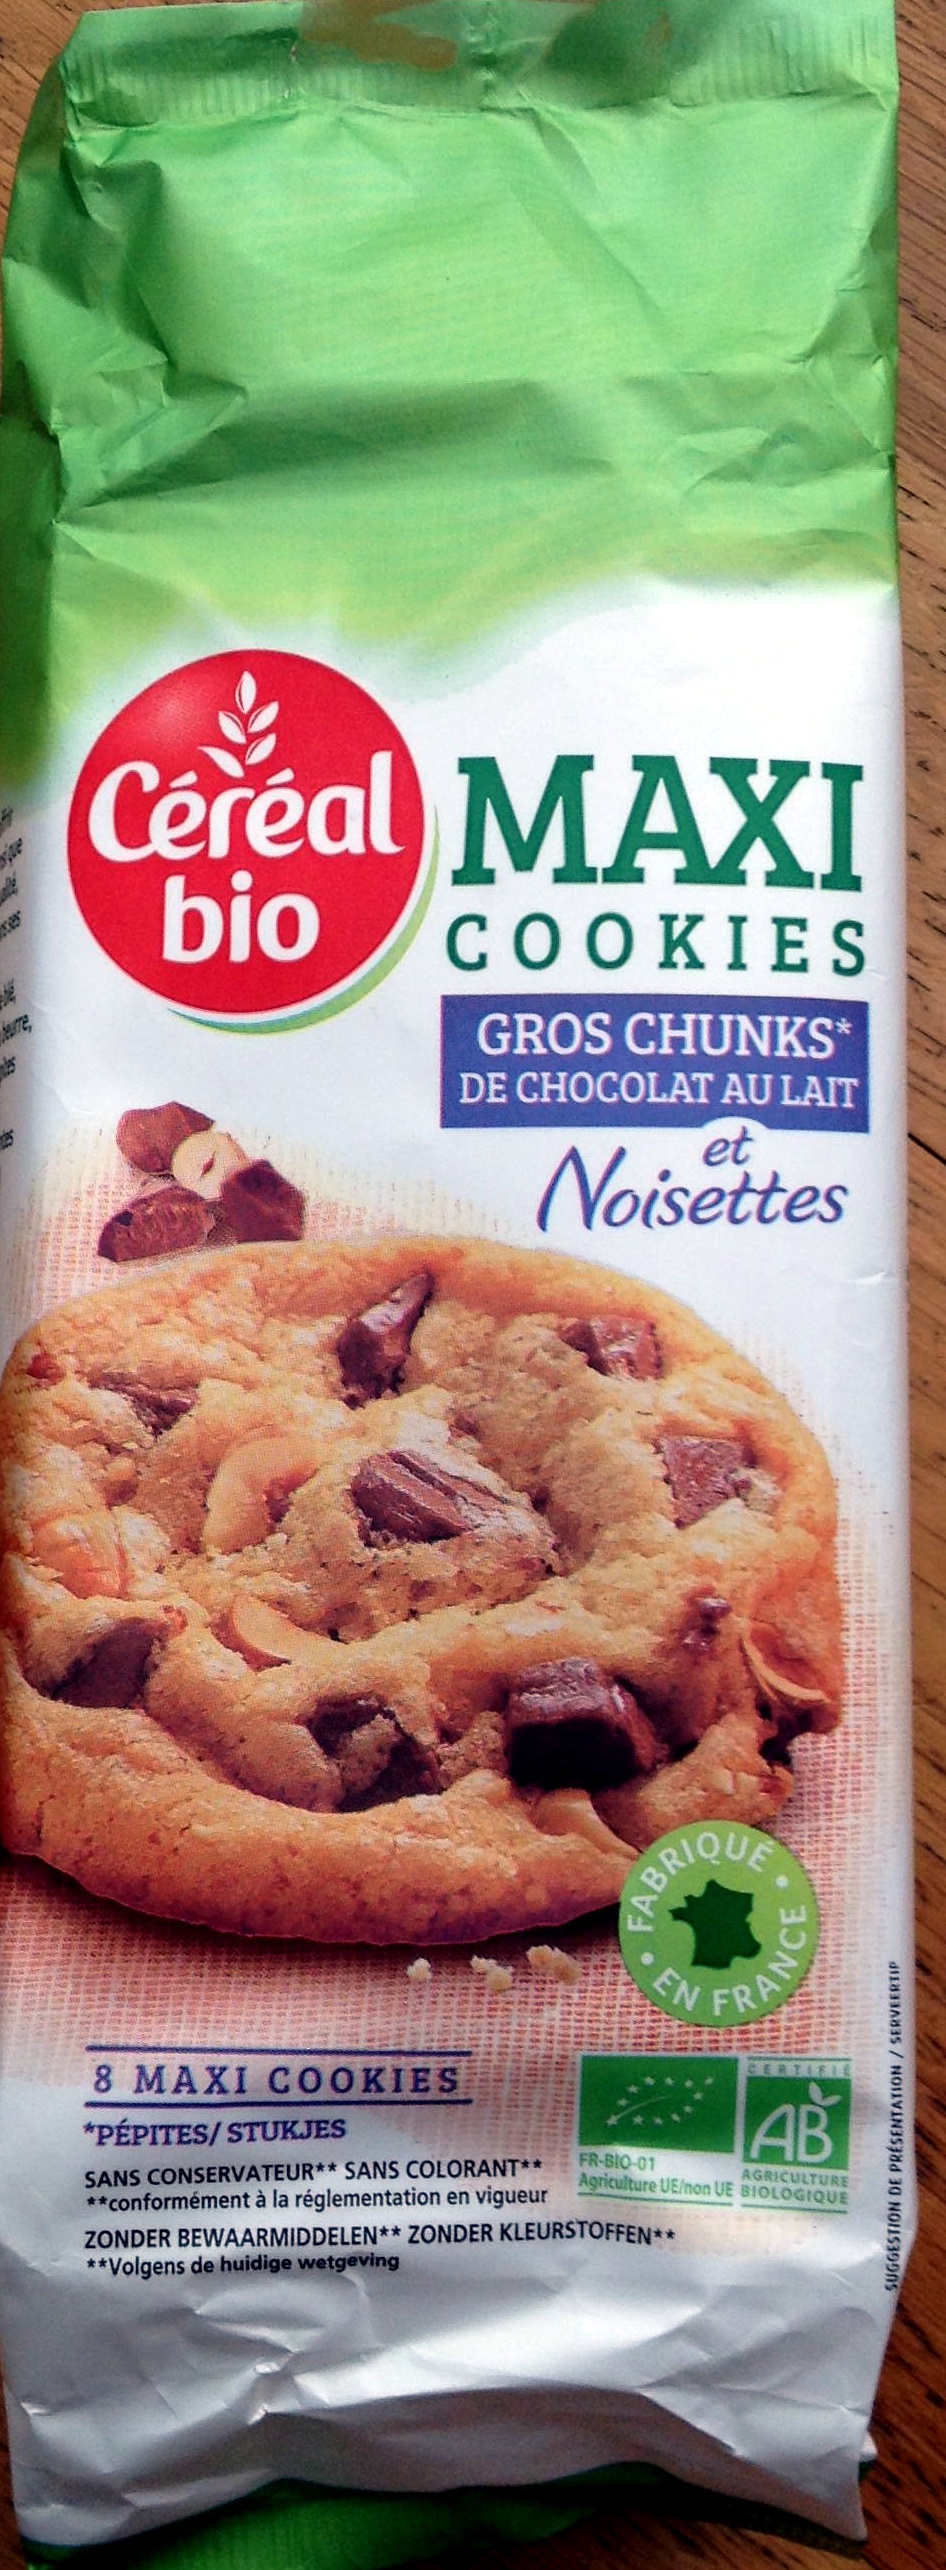 maxi cookies gros chunks de chocolat au lait et noisettes - Product - fr